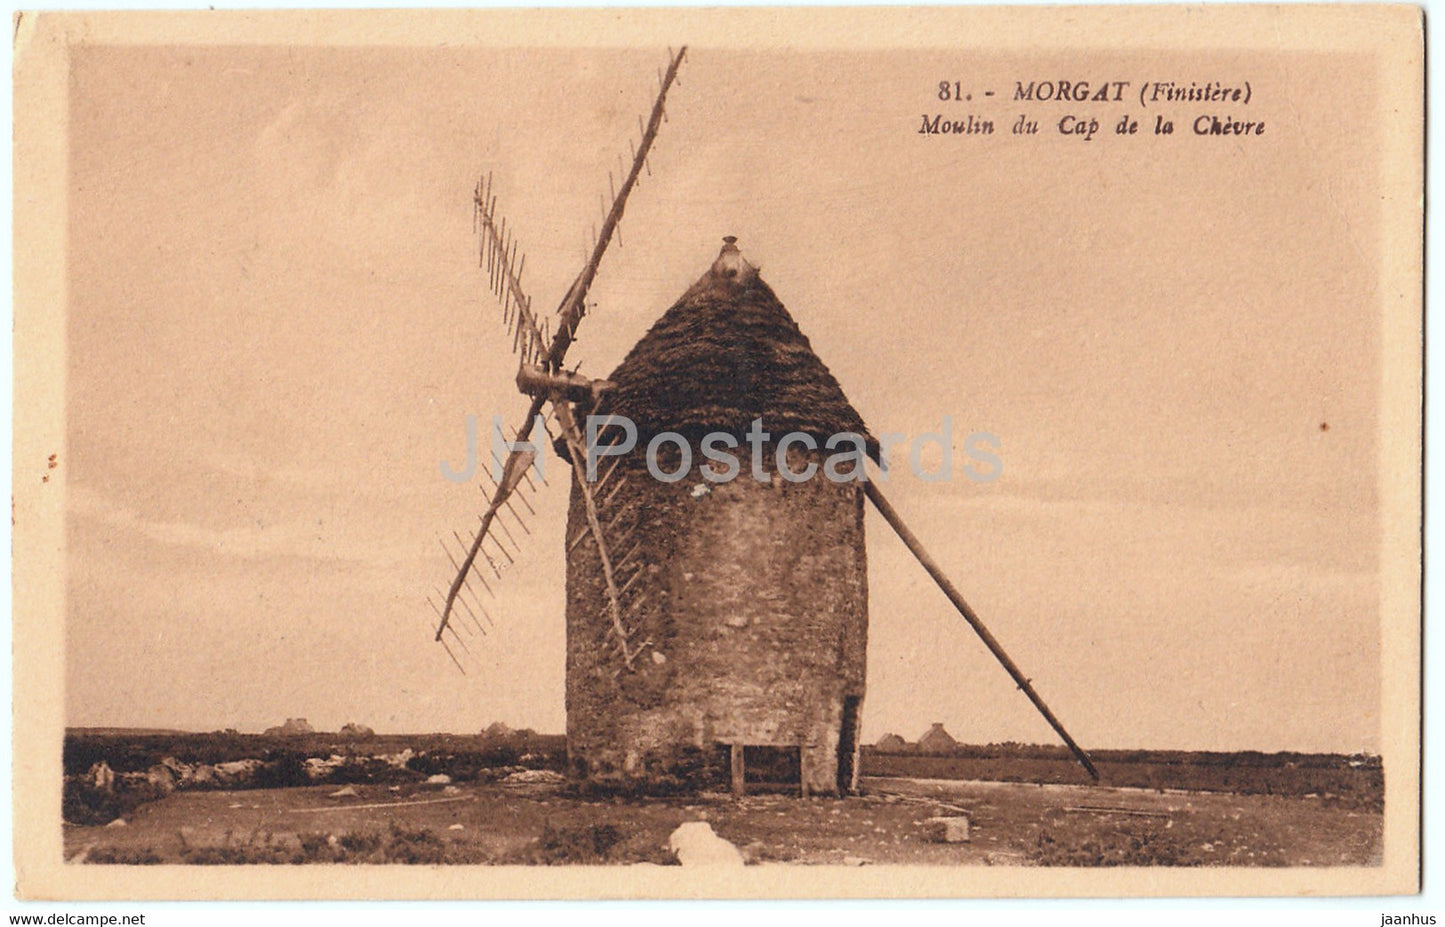 Morgat - Moulin du Cap de la Chevre - windmill - 81 - old postcard - France - unused - JH Postcards